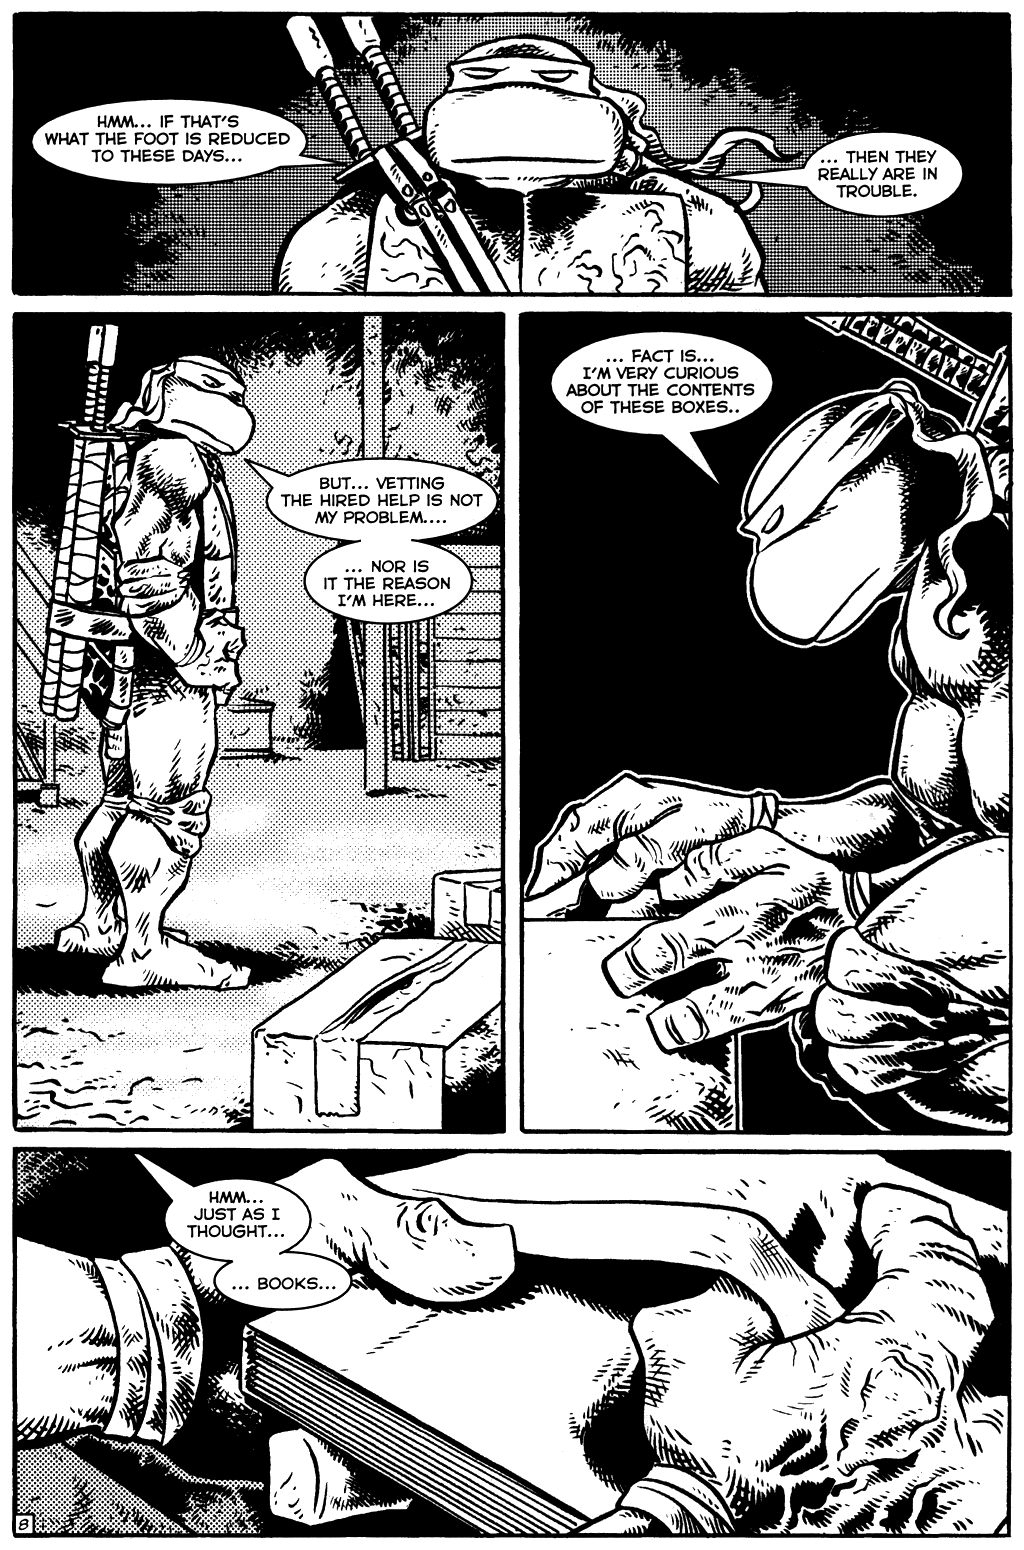 TMNT: Teenage Mutant Ninja Turtles issue 18 - Page 10